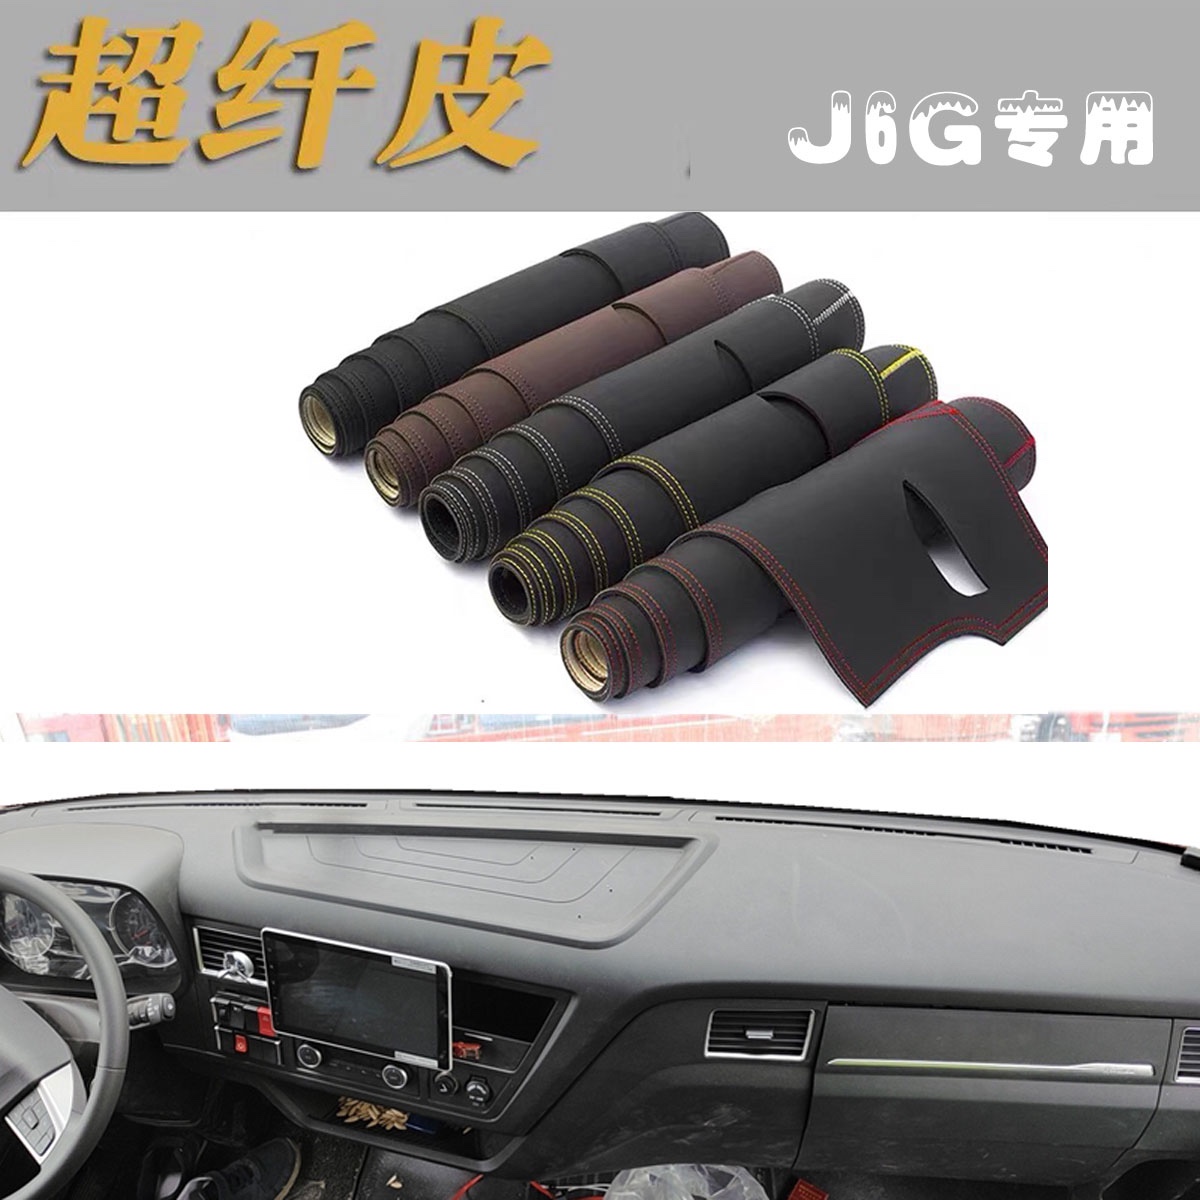 解放J6G专用皮革避光垫货车驾驶室装饰配件仪表台遮阳防滑晒垫子